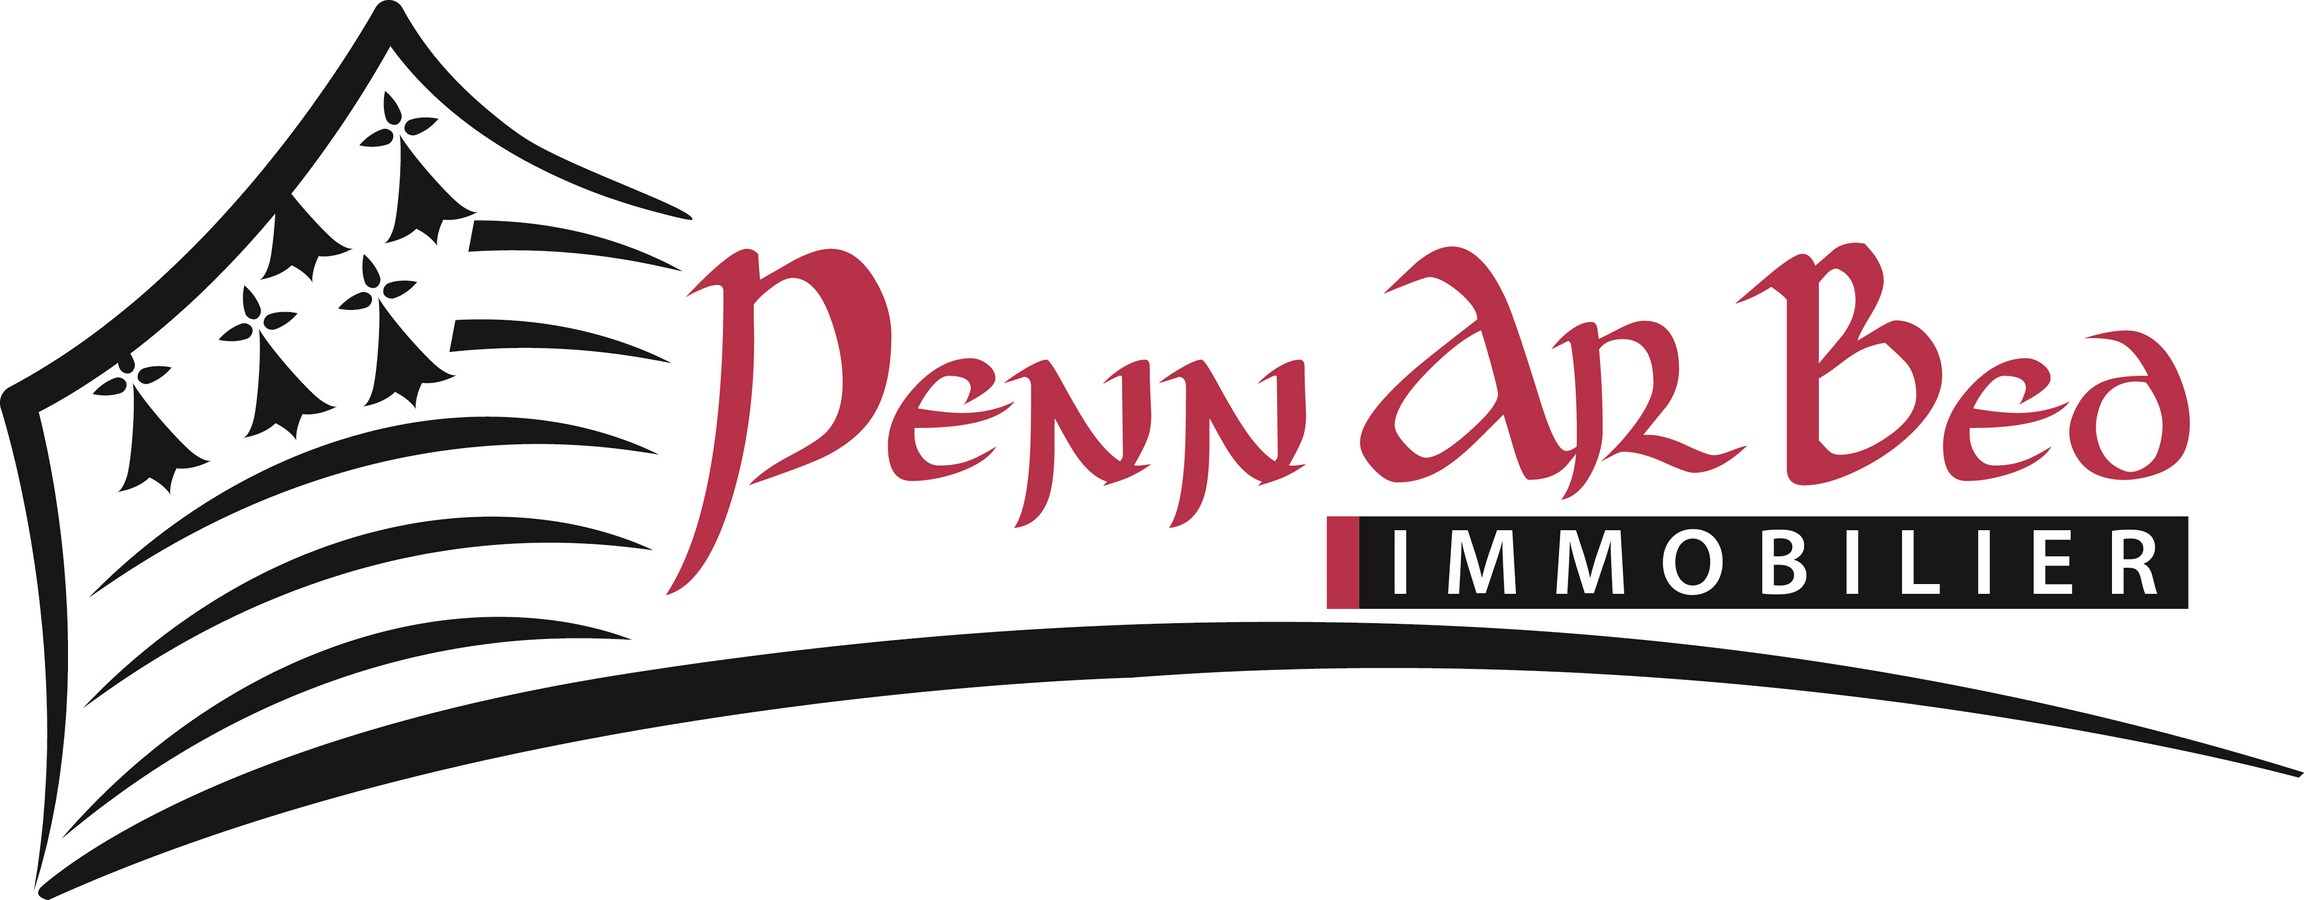 Agence Penn Ar Bed Immobilier